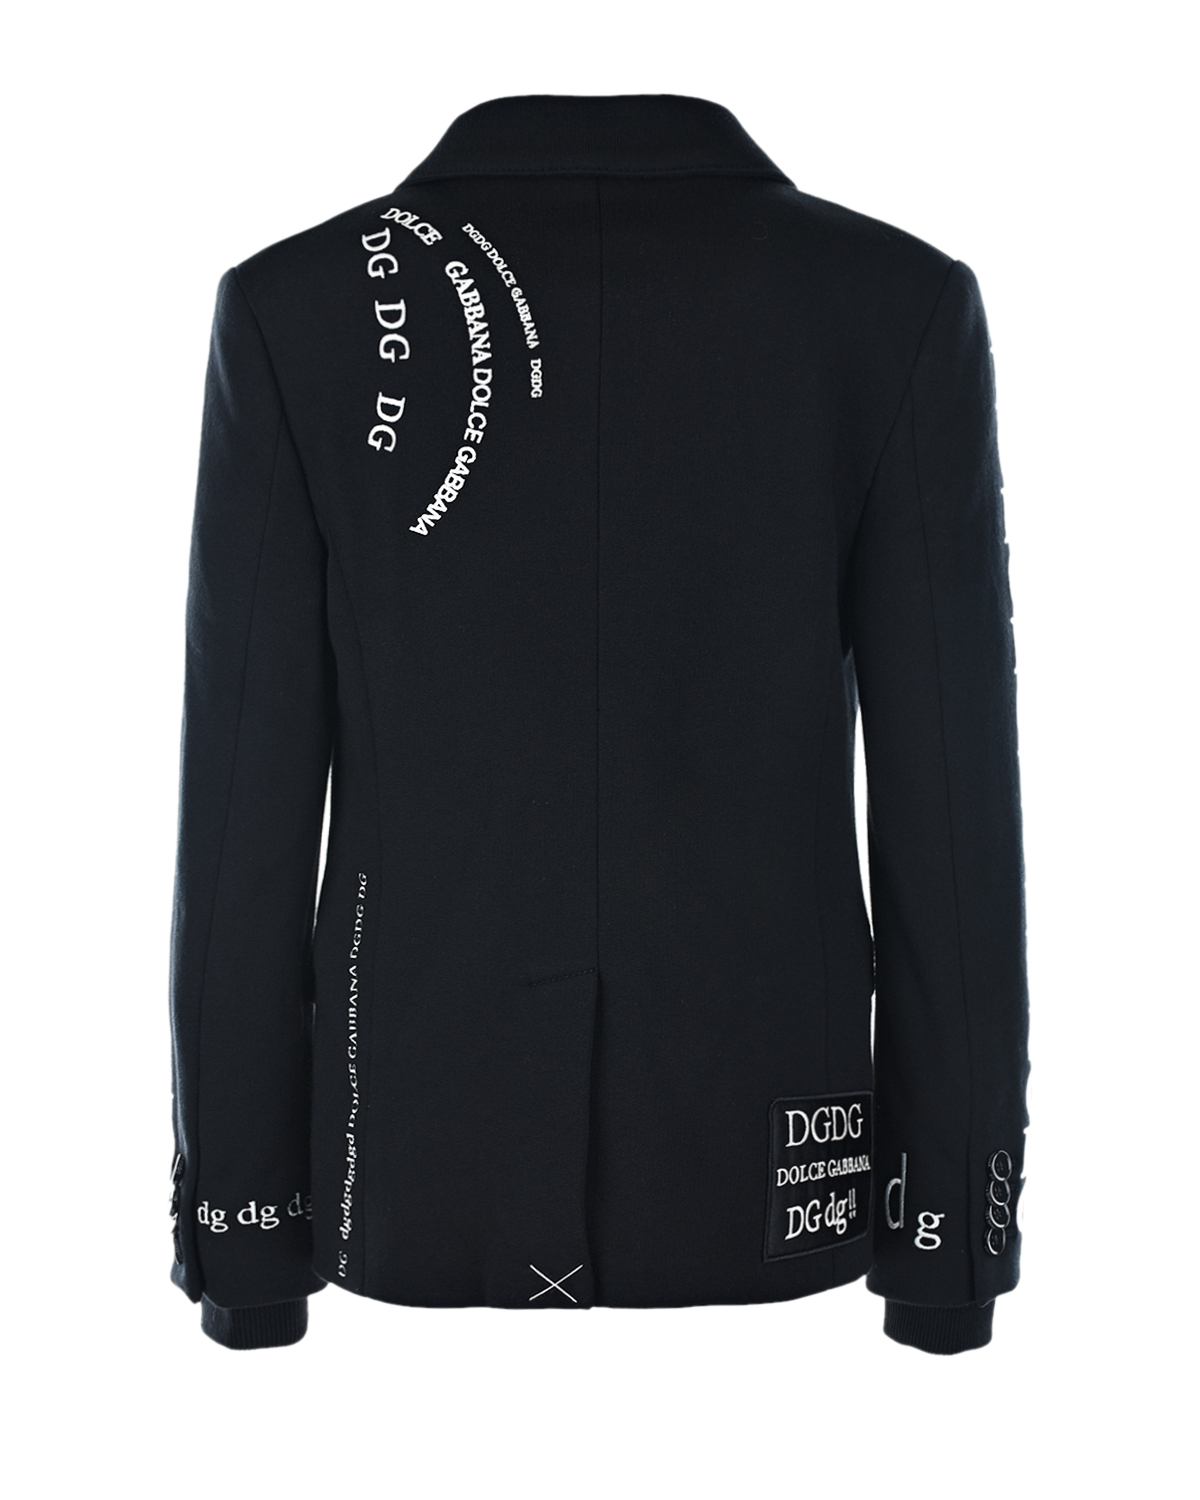 Однобортный пиджак из джерси с вышитым логотипом Dolce&Gabbana детский, размер 116, цвет черный - фото 3